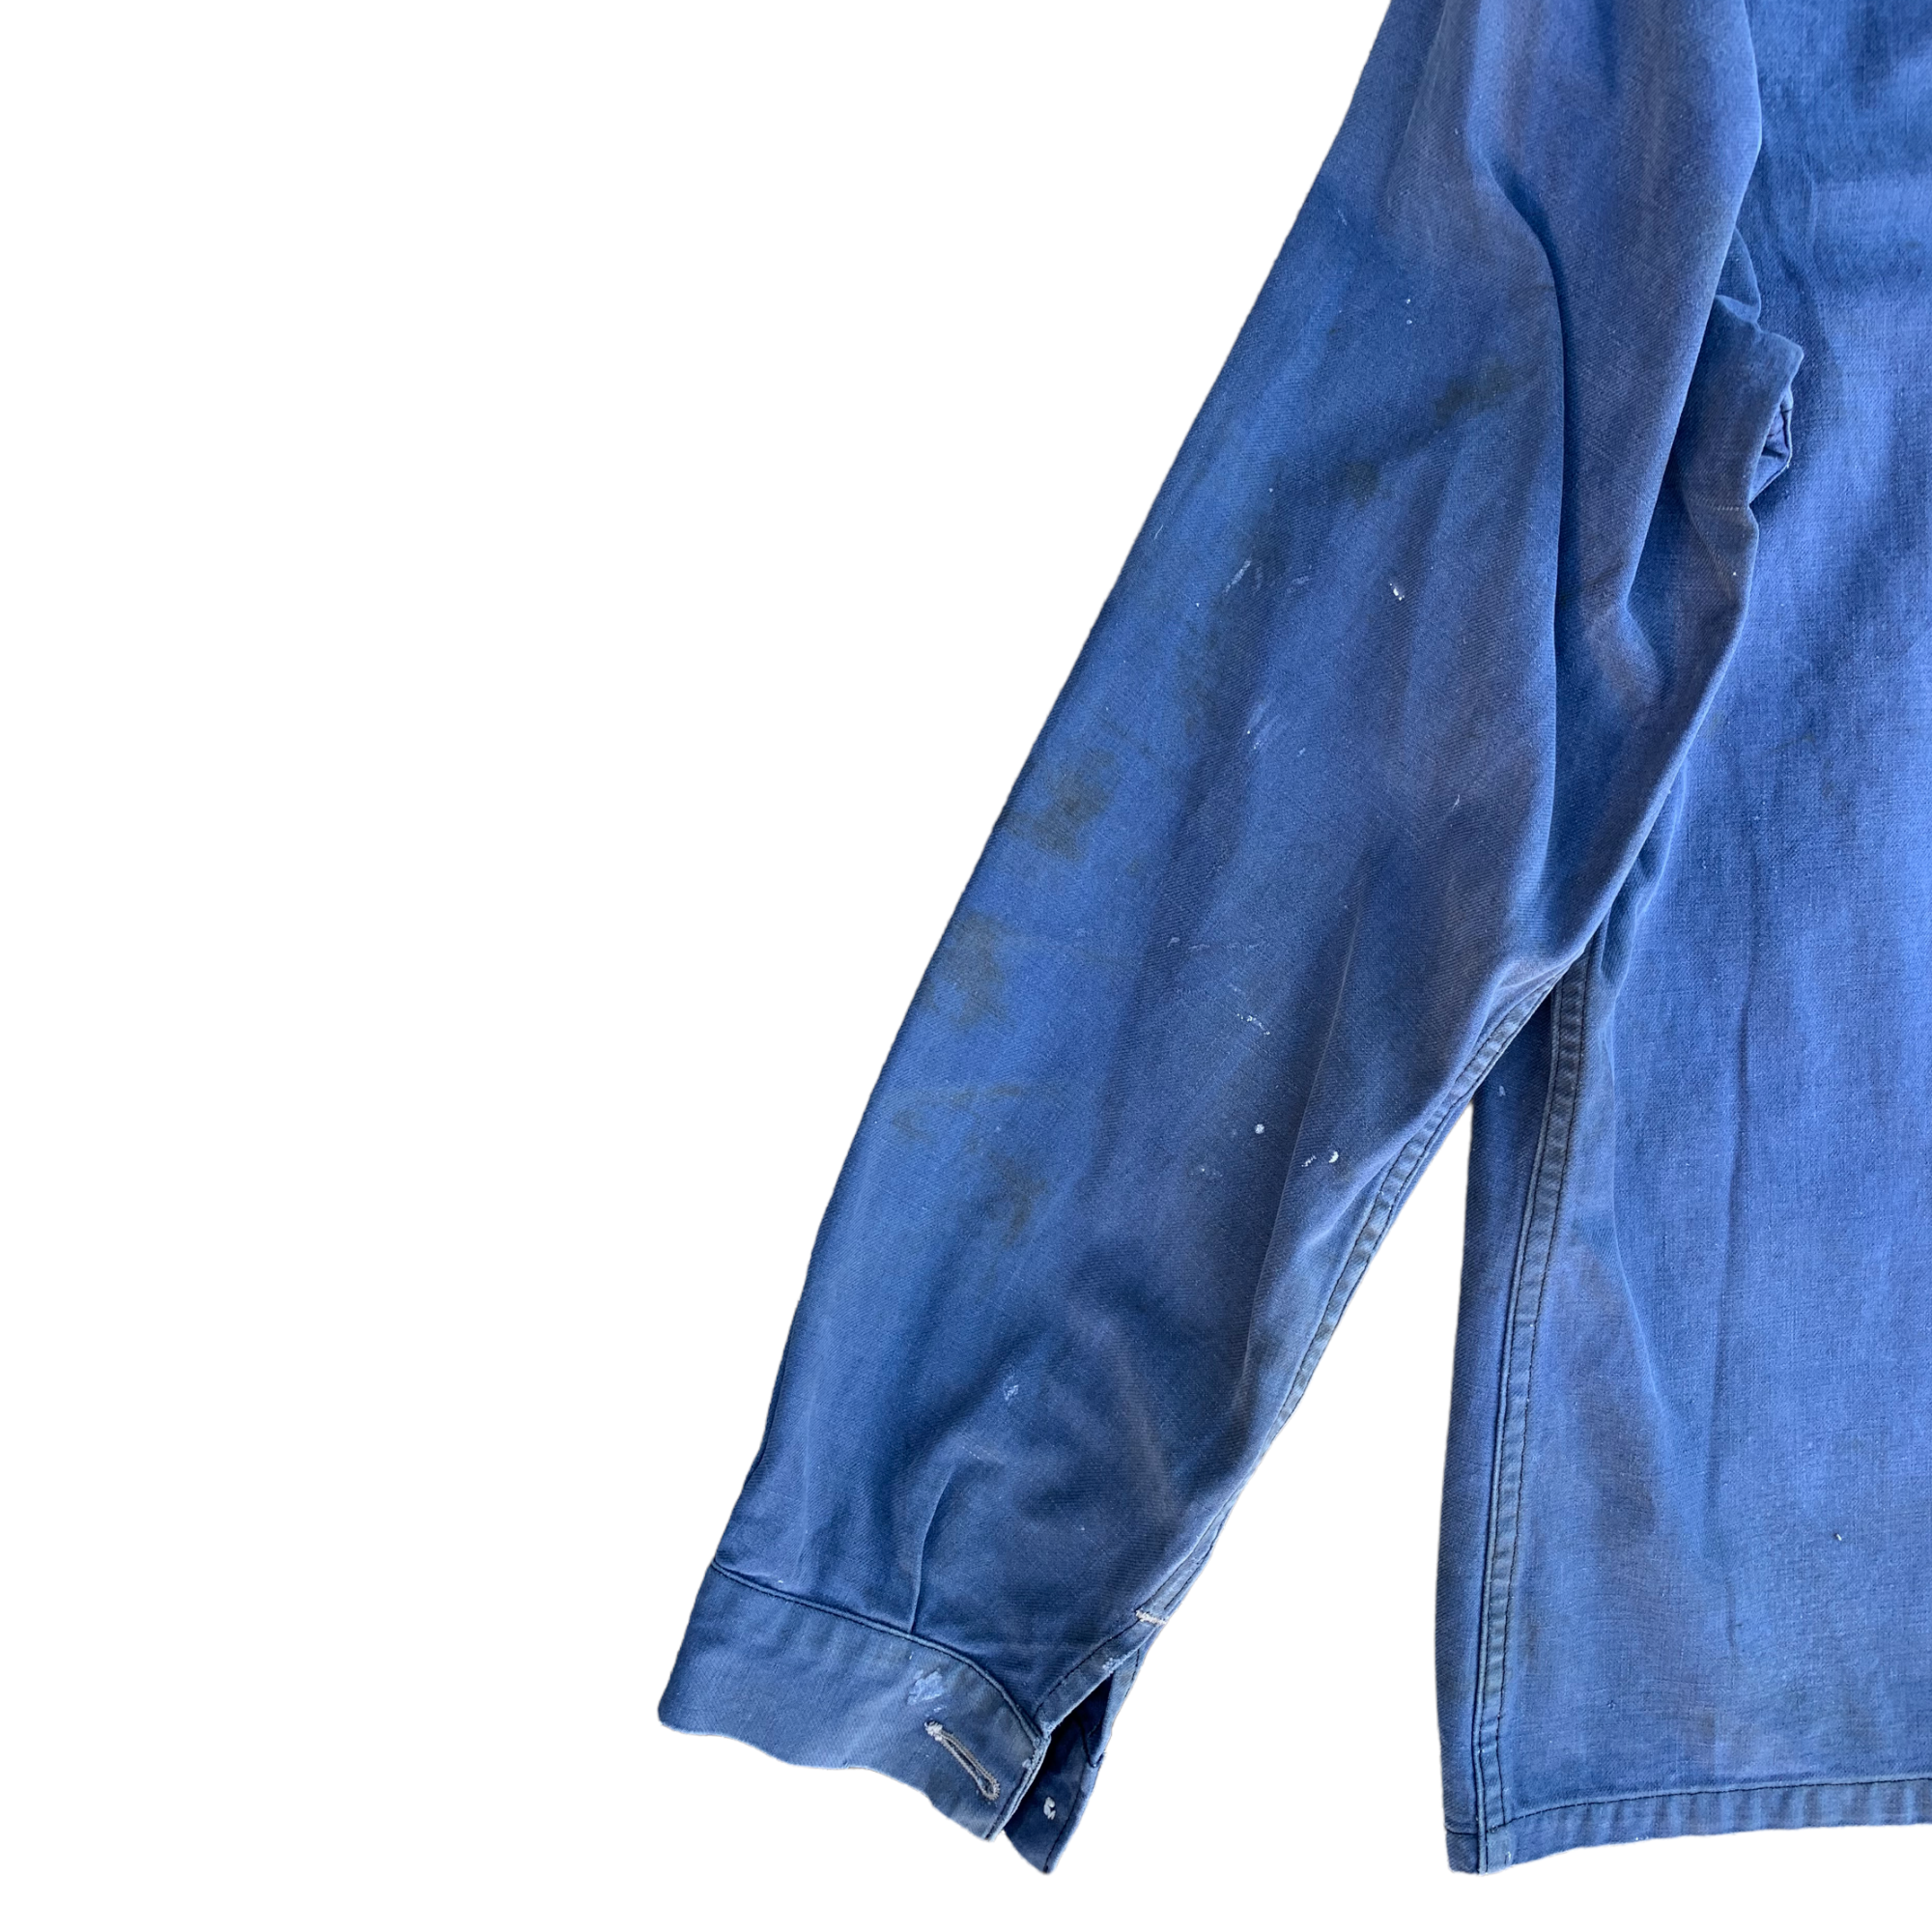 1960s Bleu De Travail French Chore Painter’s Jacket - Faded Blue - L/XL